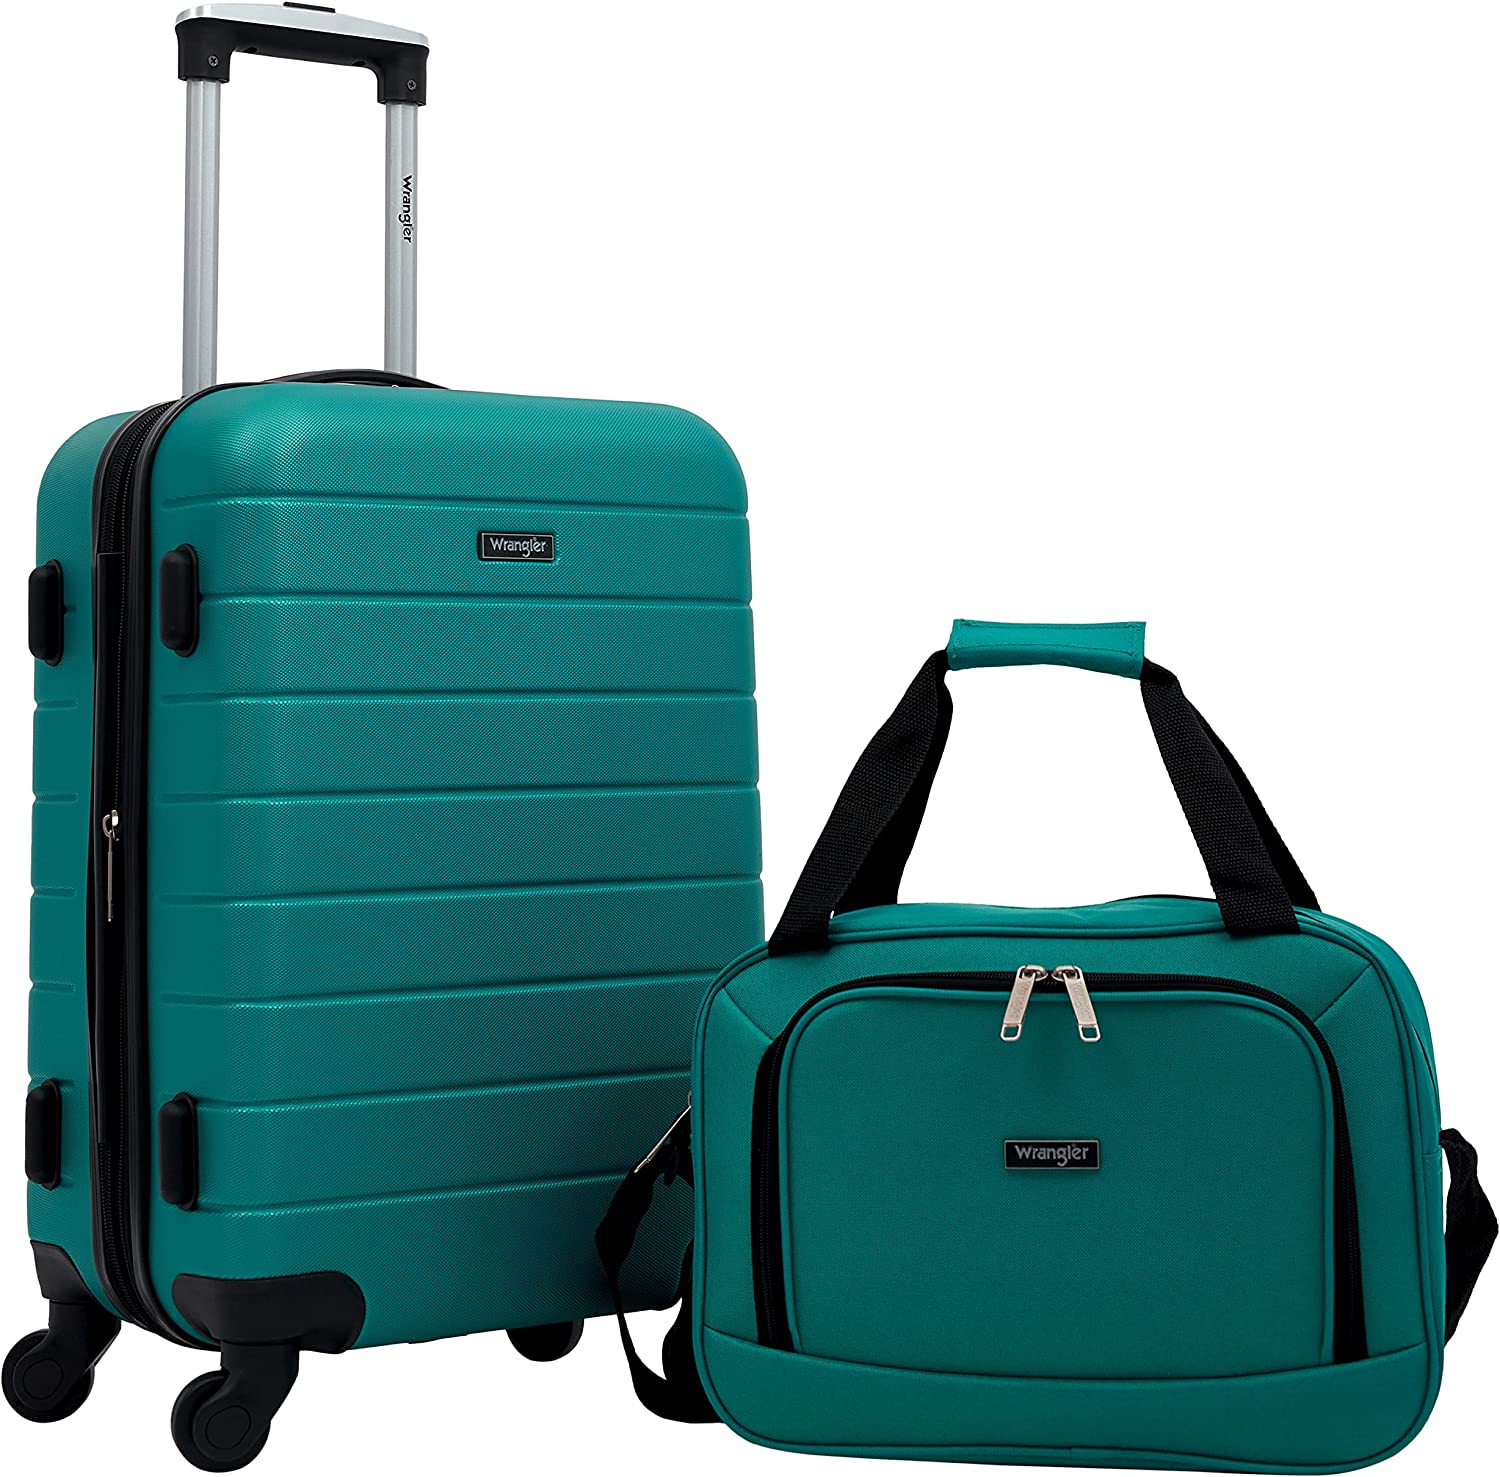 Wrangler Smart Spinner Traveler Hard Shell Suitcase, 2-Piece